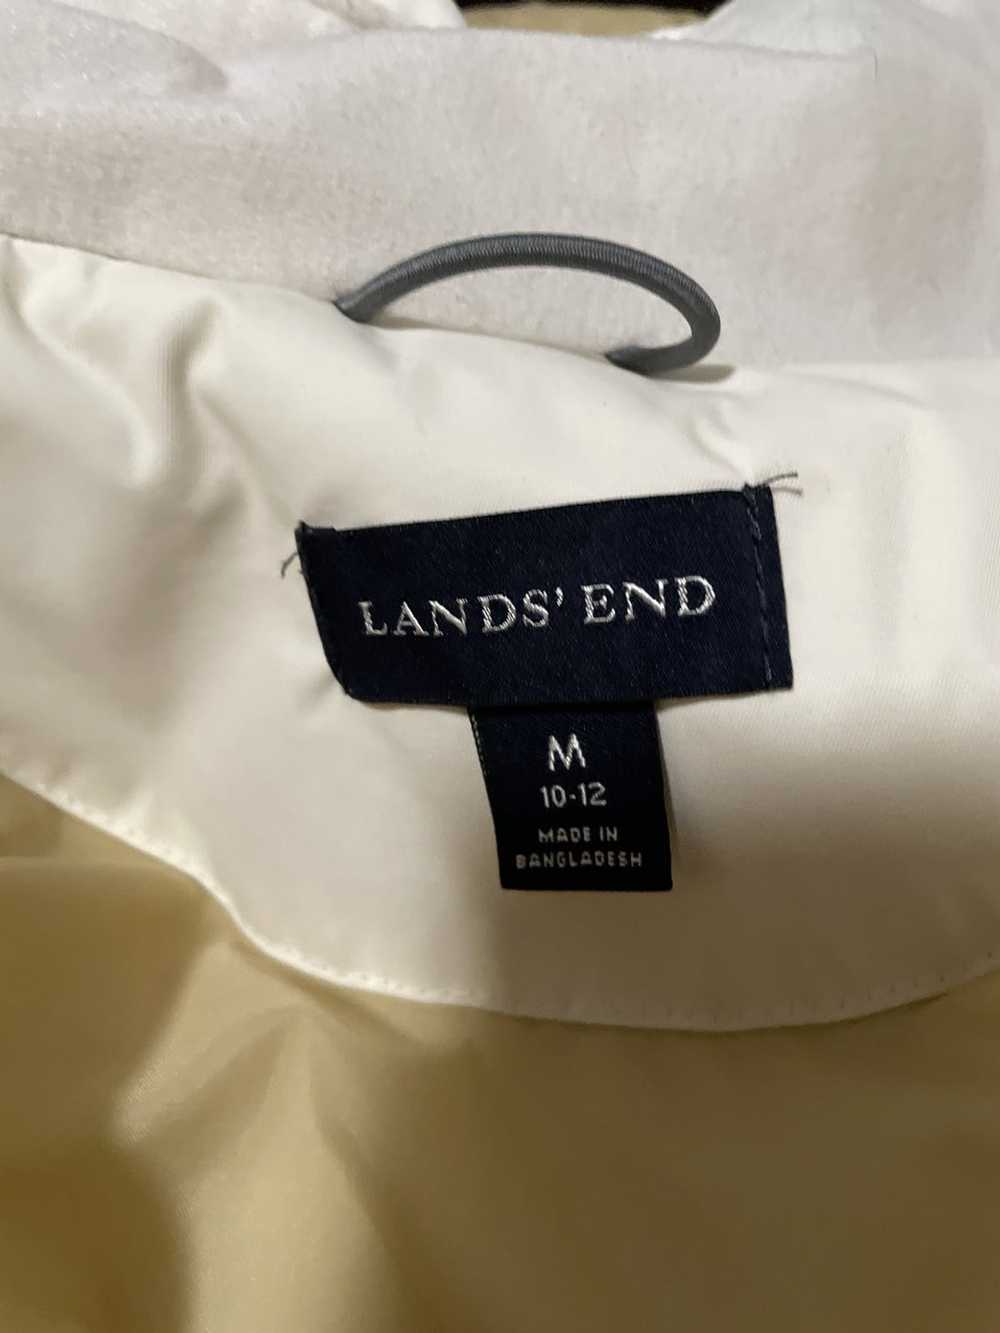 Lands End lands end rain jacket white - image 4